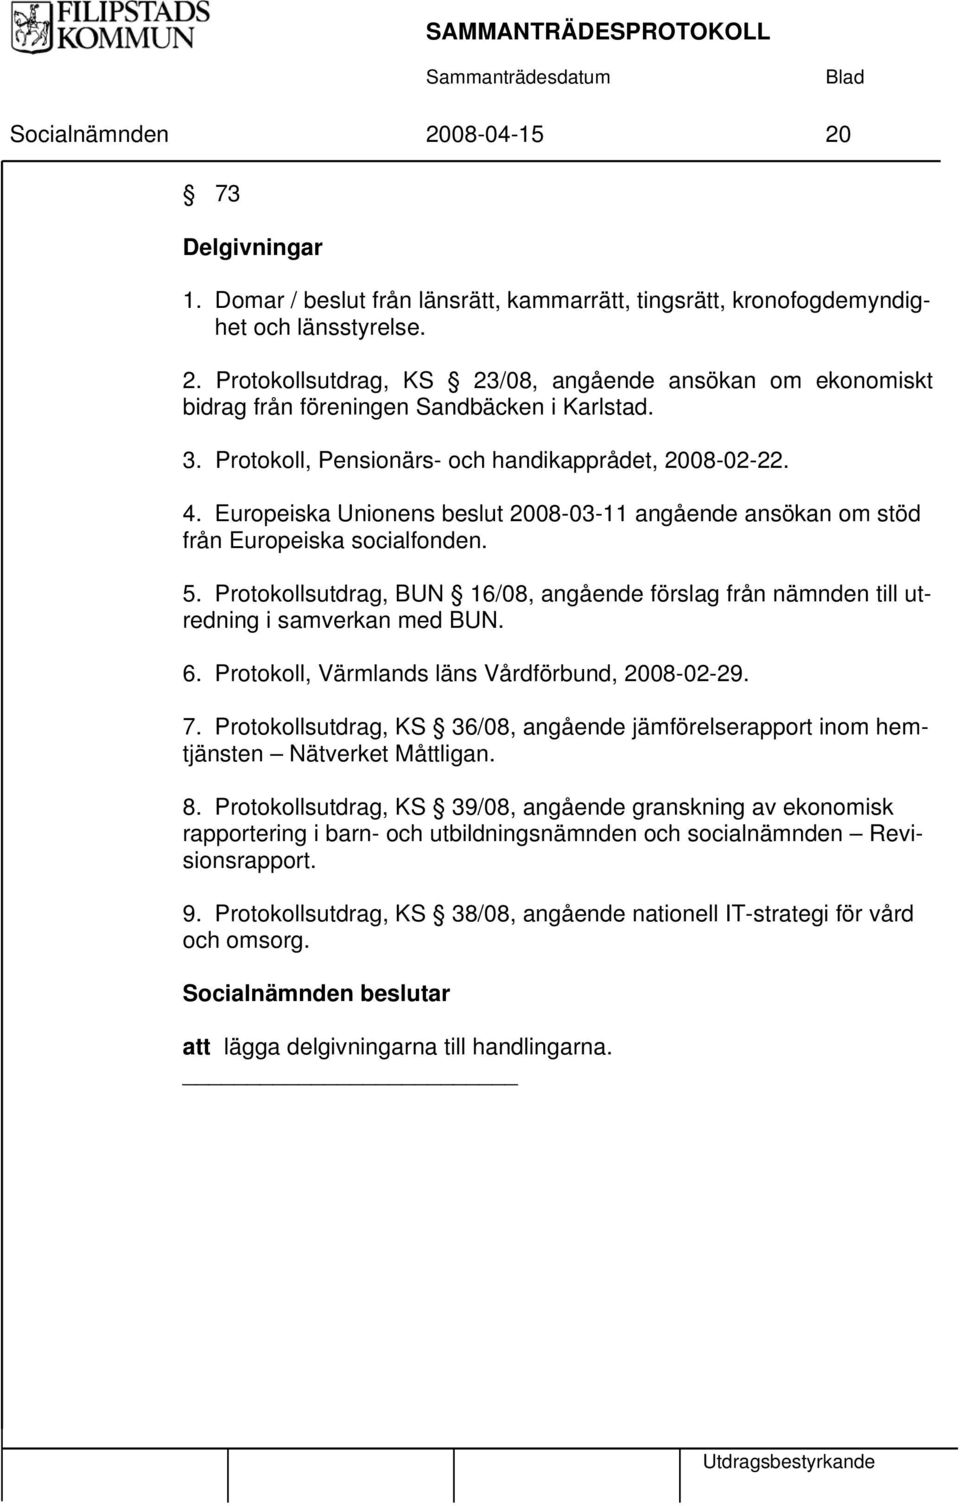 Protokollsutdrag, BUN 16/08, angående förslag från nämnden till utredning i samverkan med BUN. 6. Protokoll, Värmlands läns Vårdförbund, 2008-02-29. 7.